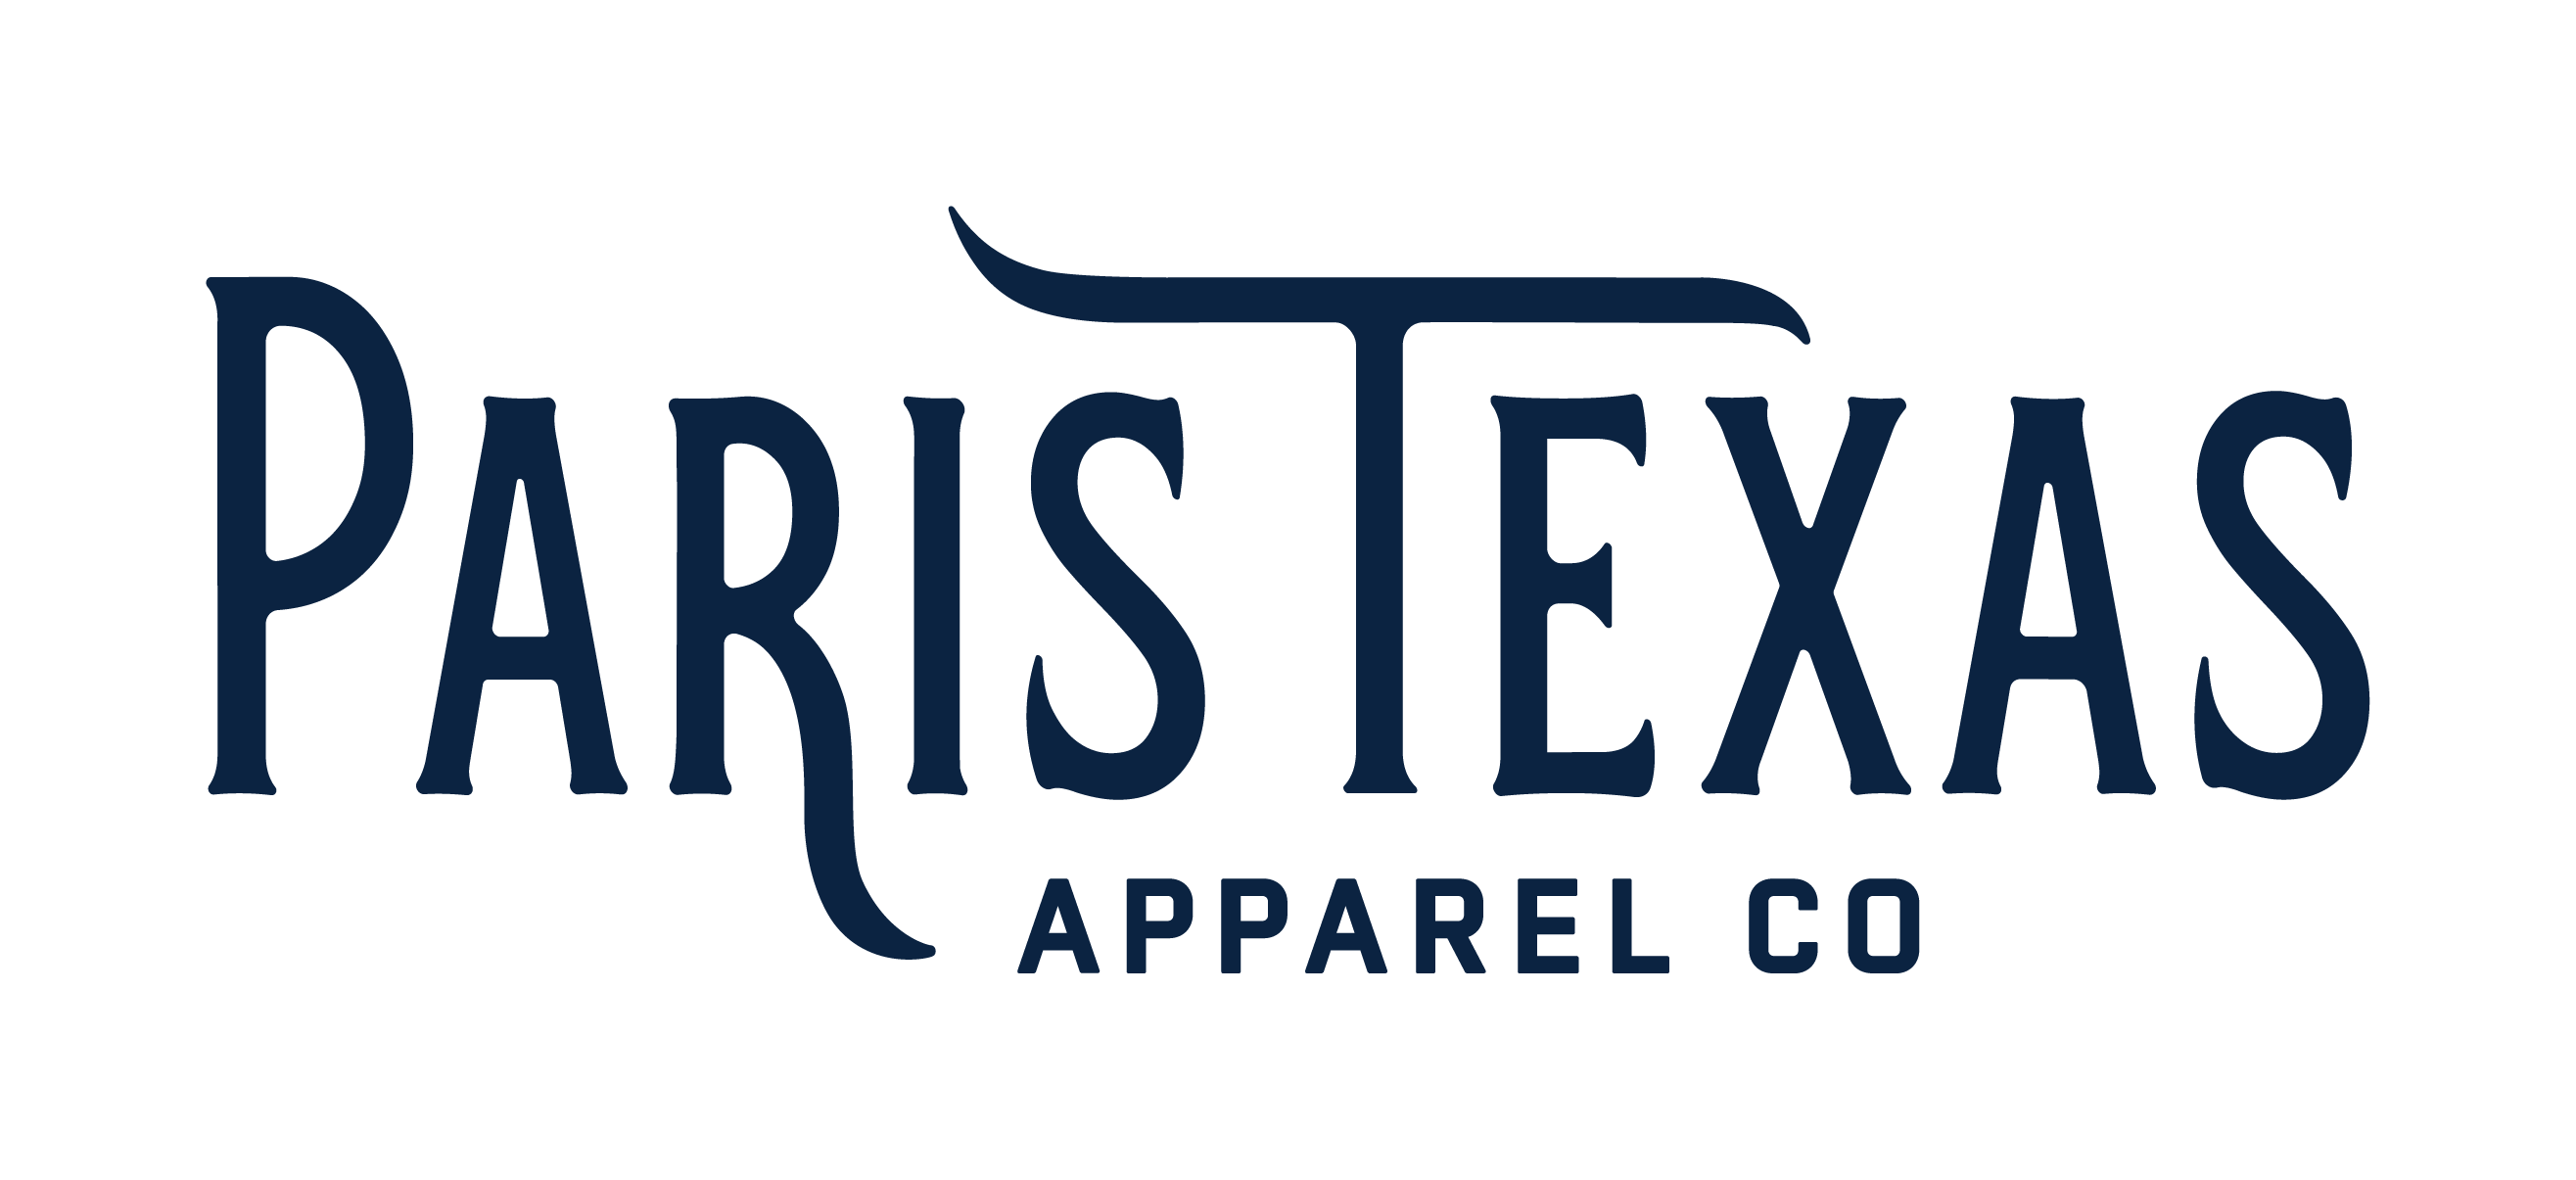 Go 'Stros Collection – Paris Texas Apparel Co